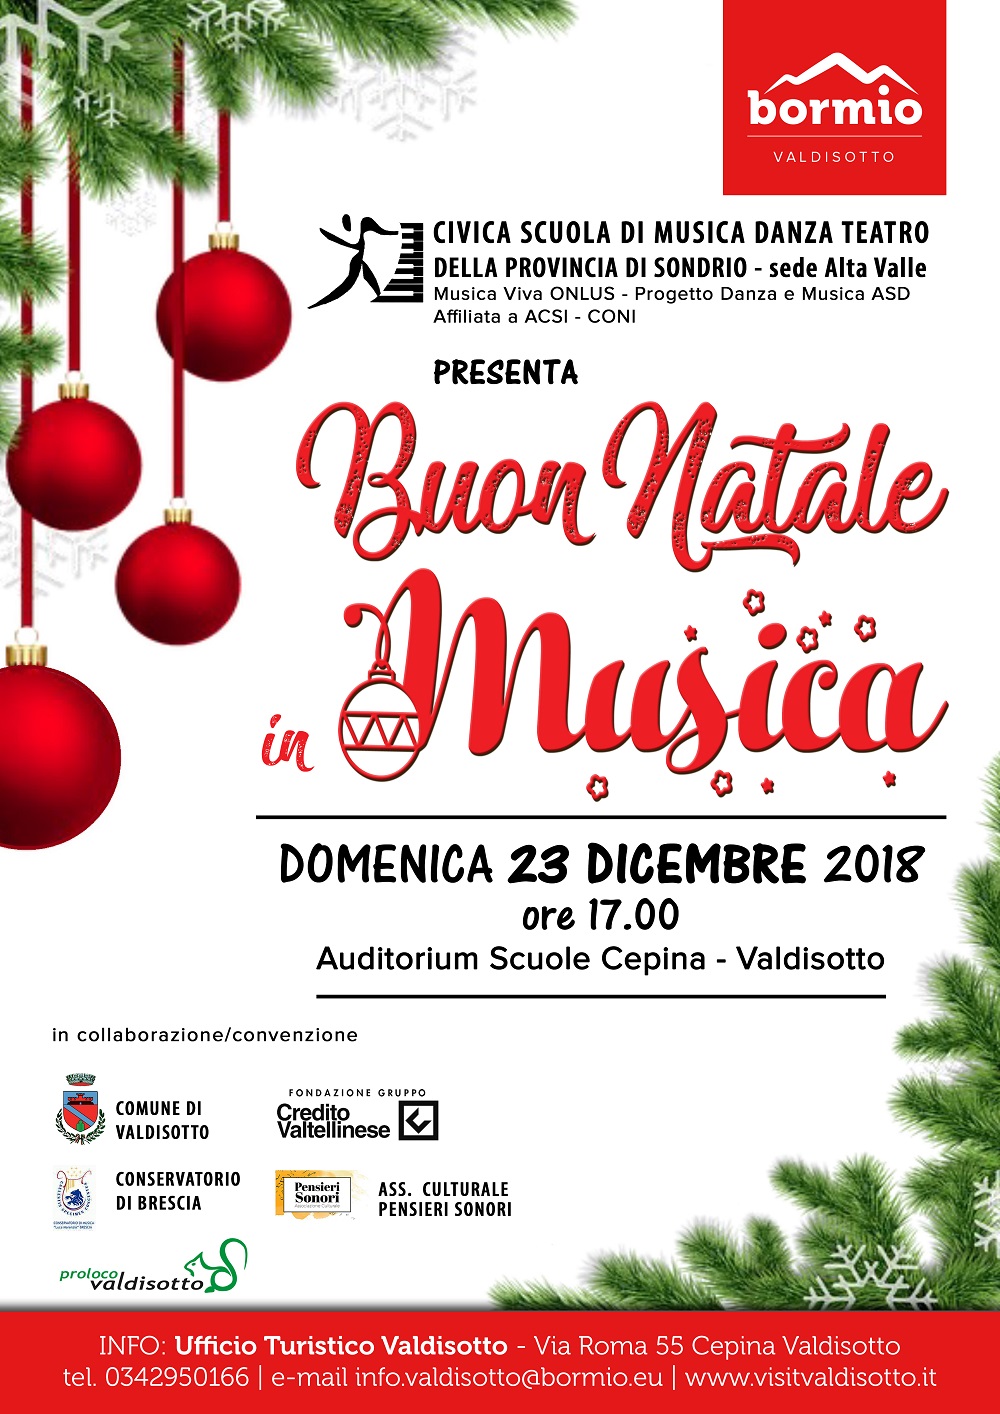 Immagini Natalizie Mail.Buon Natale In Musica Saggio Degli Allievi Visit Valdisotto